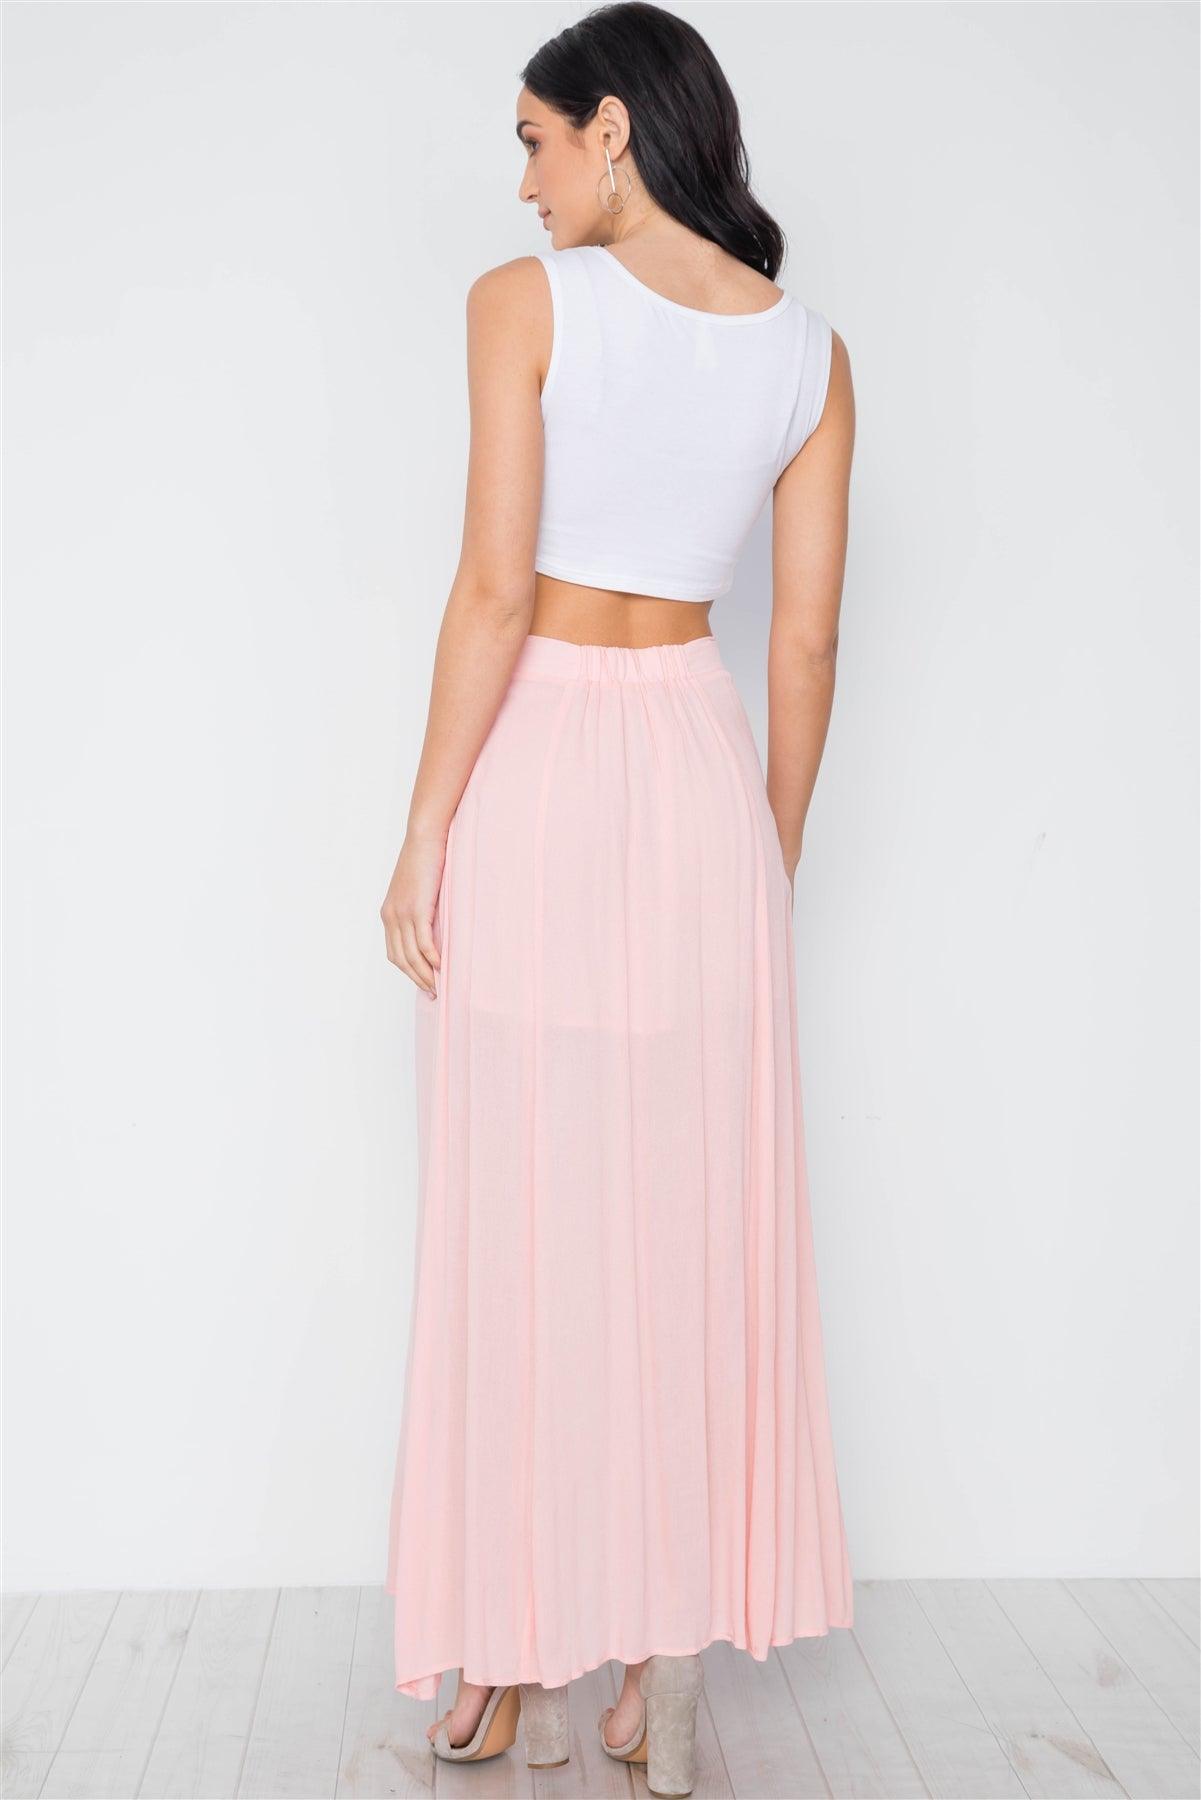 Pink Button-Front Maxi High Waist Skirt /3-2-1